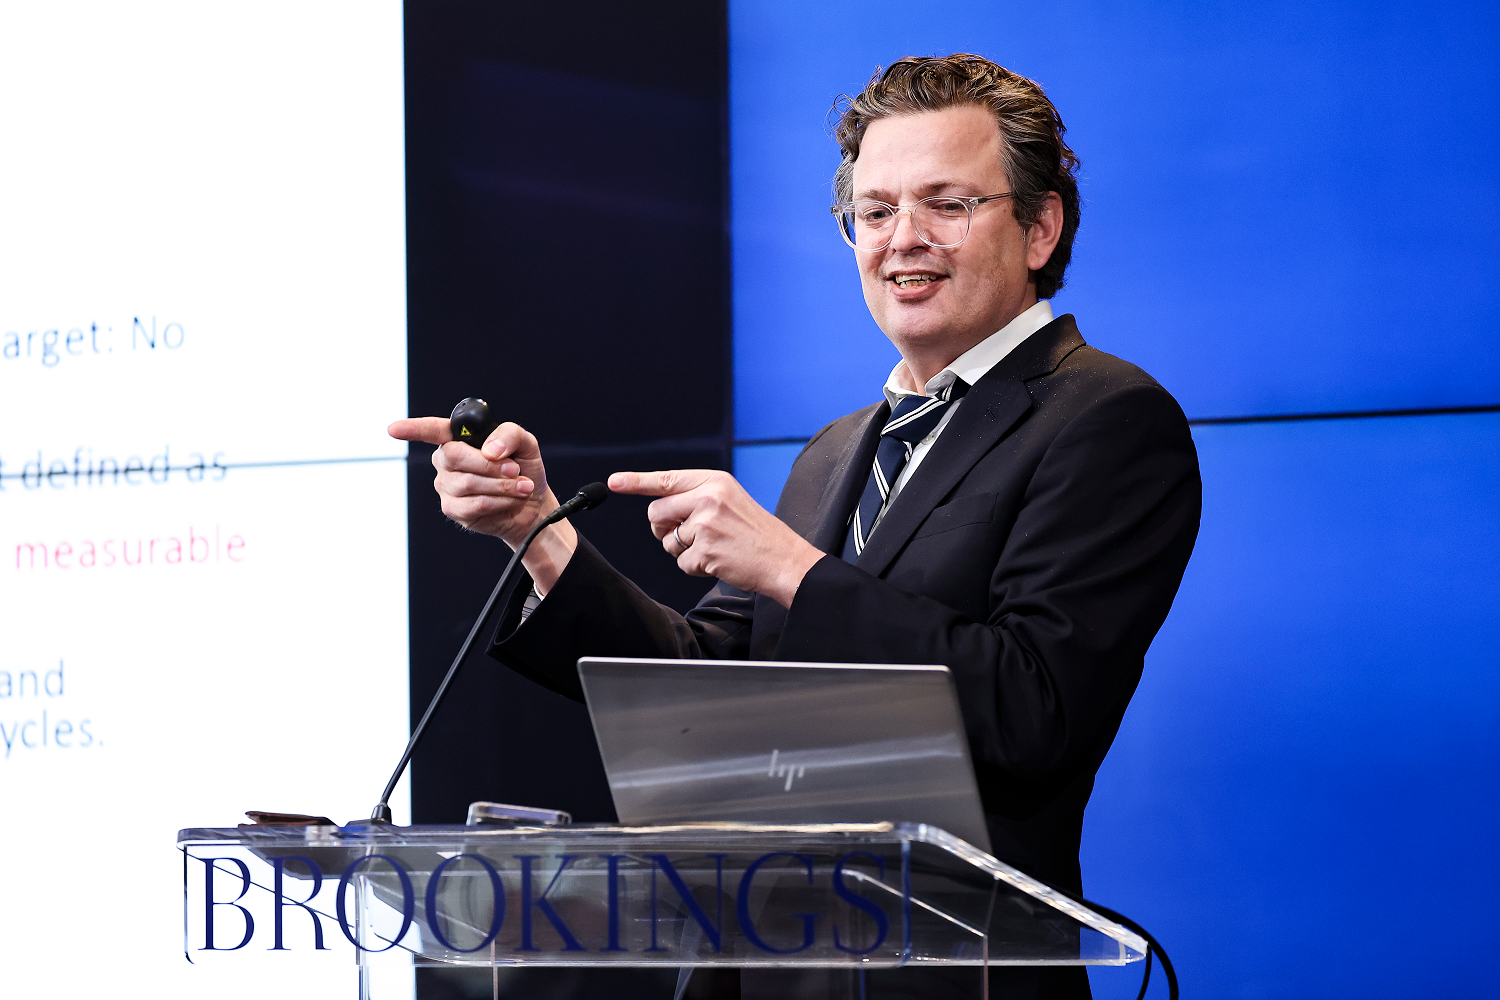 Gauti Eggertsson presenting at Brookings